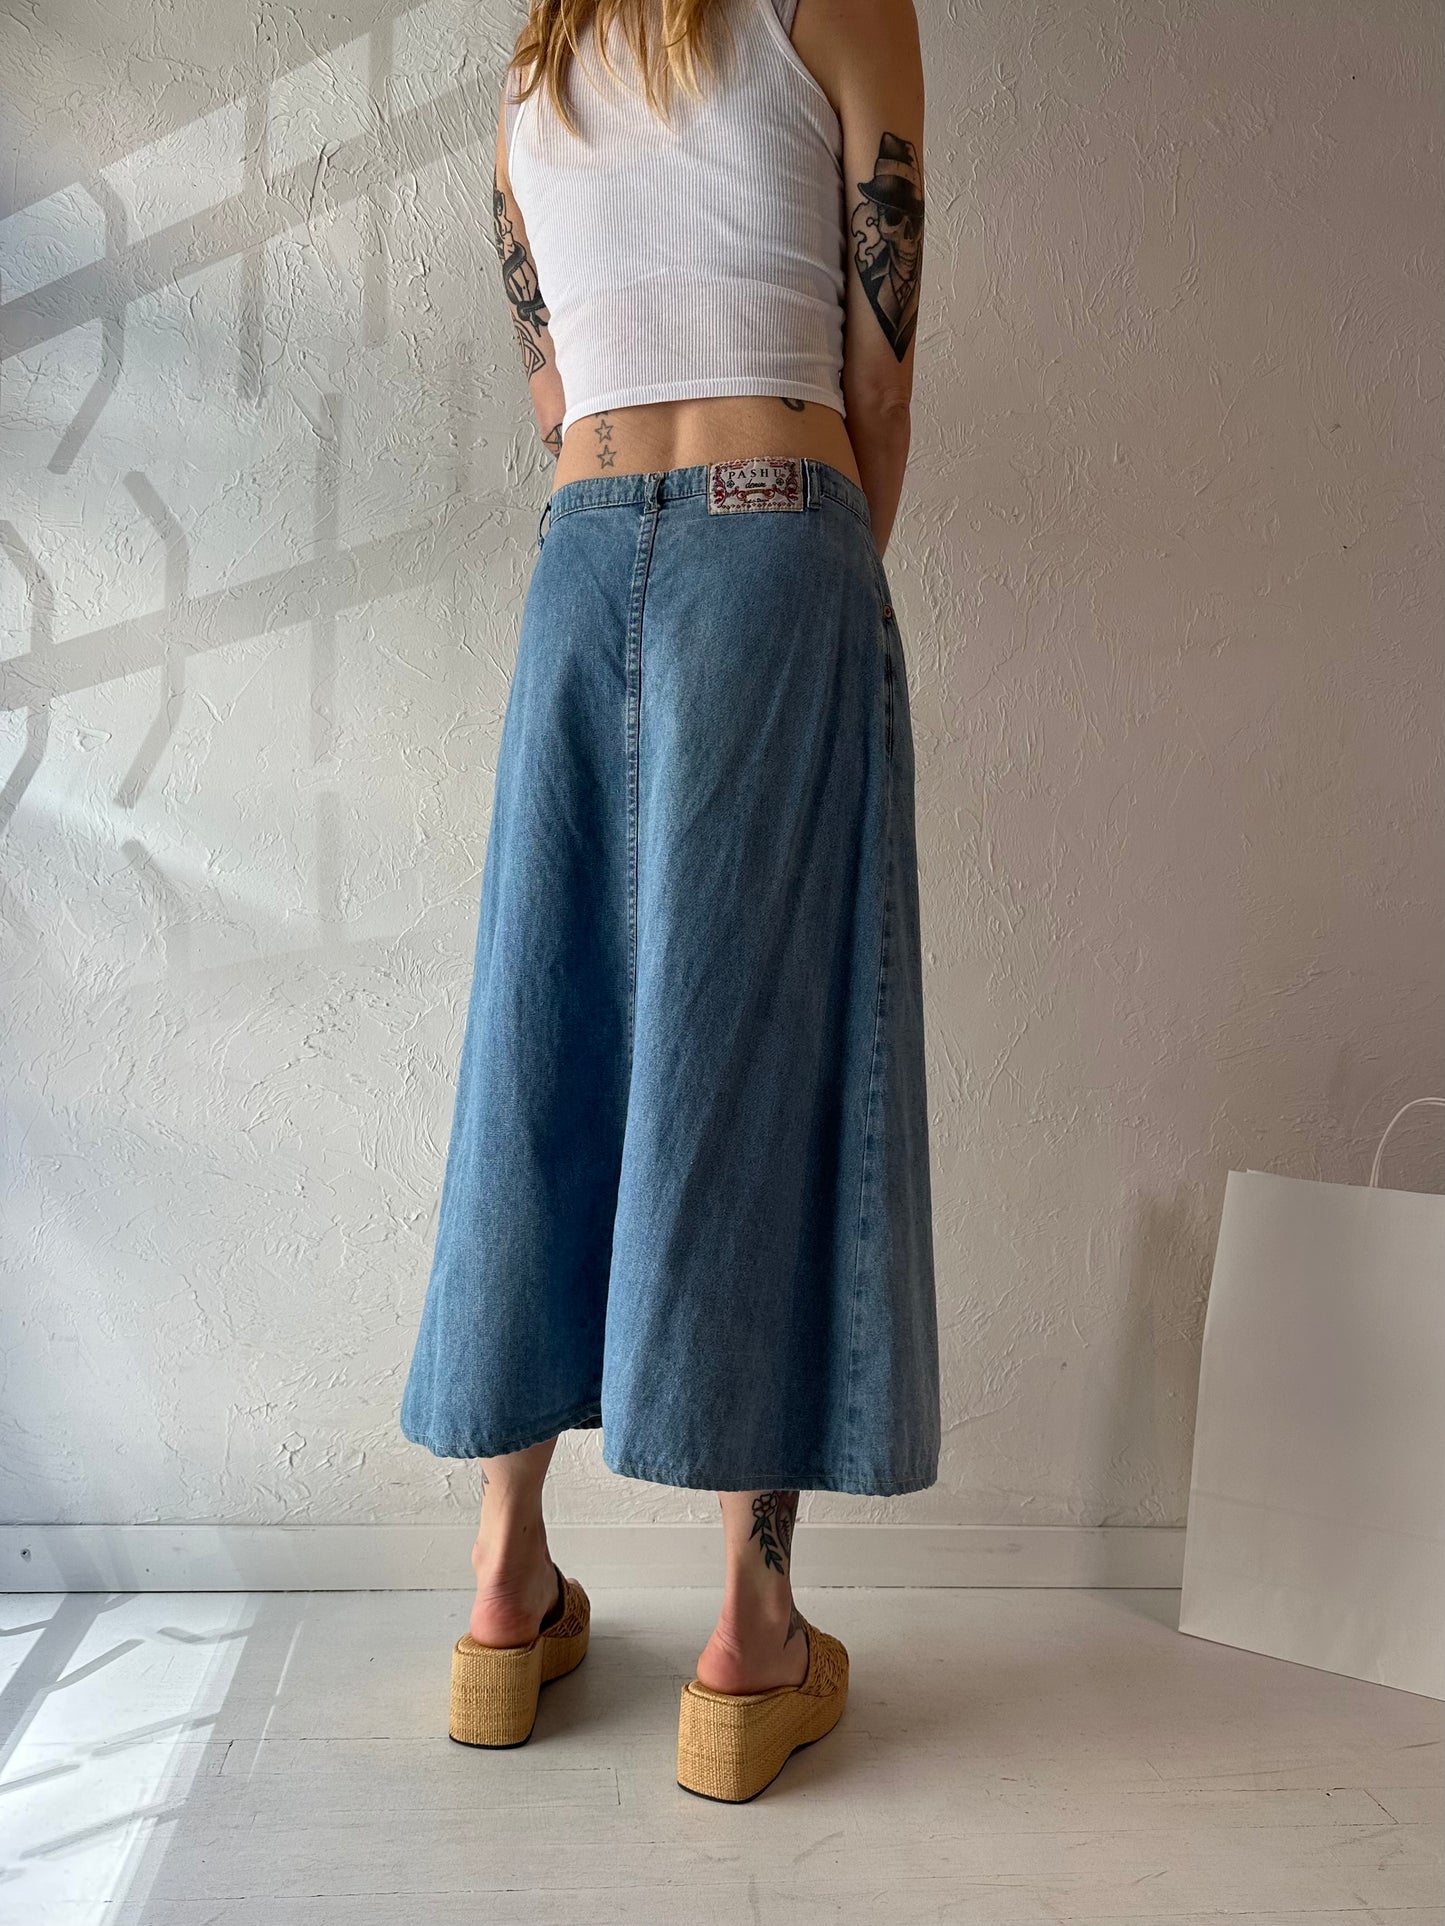 90s 'Pashu' Denim Midi Skirt / Medium